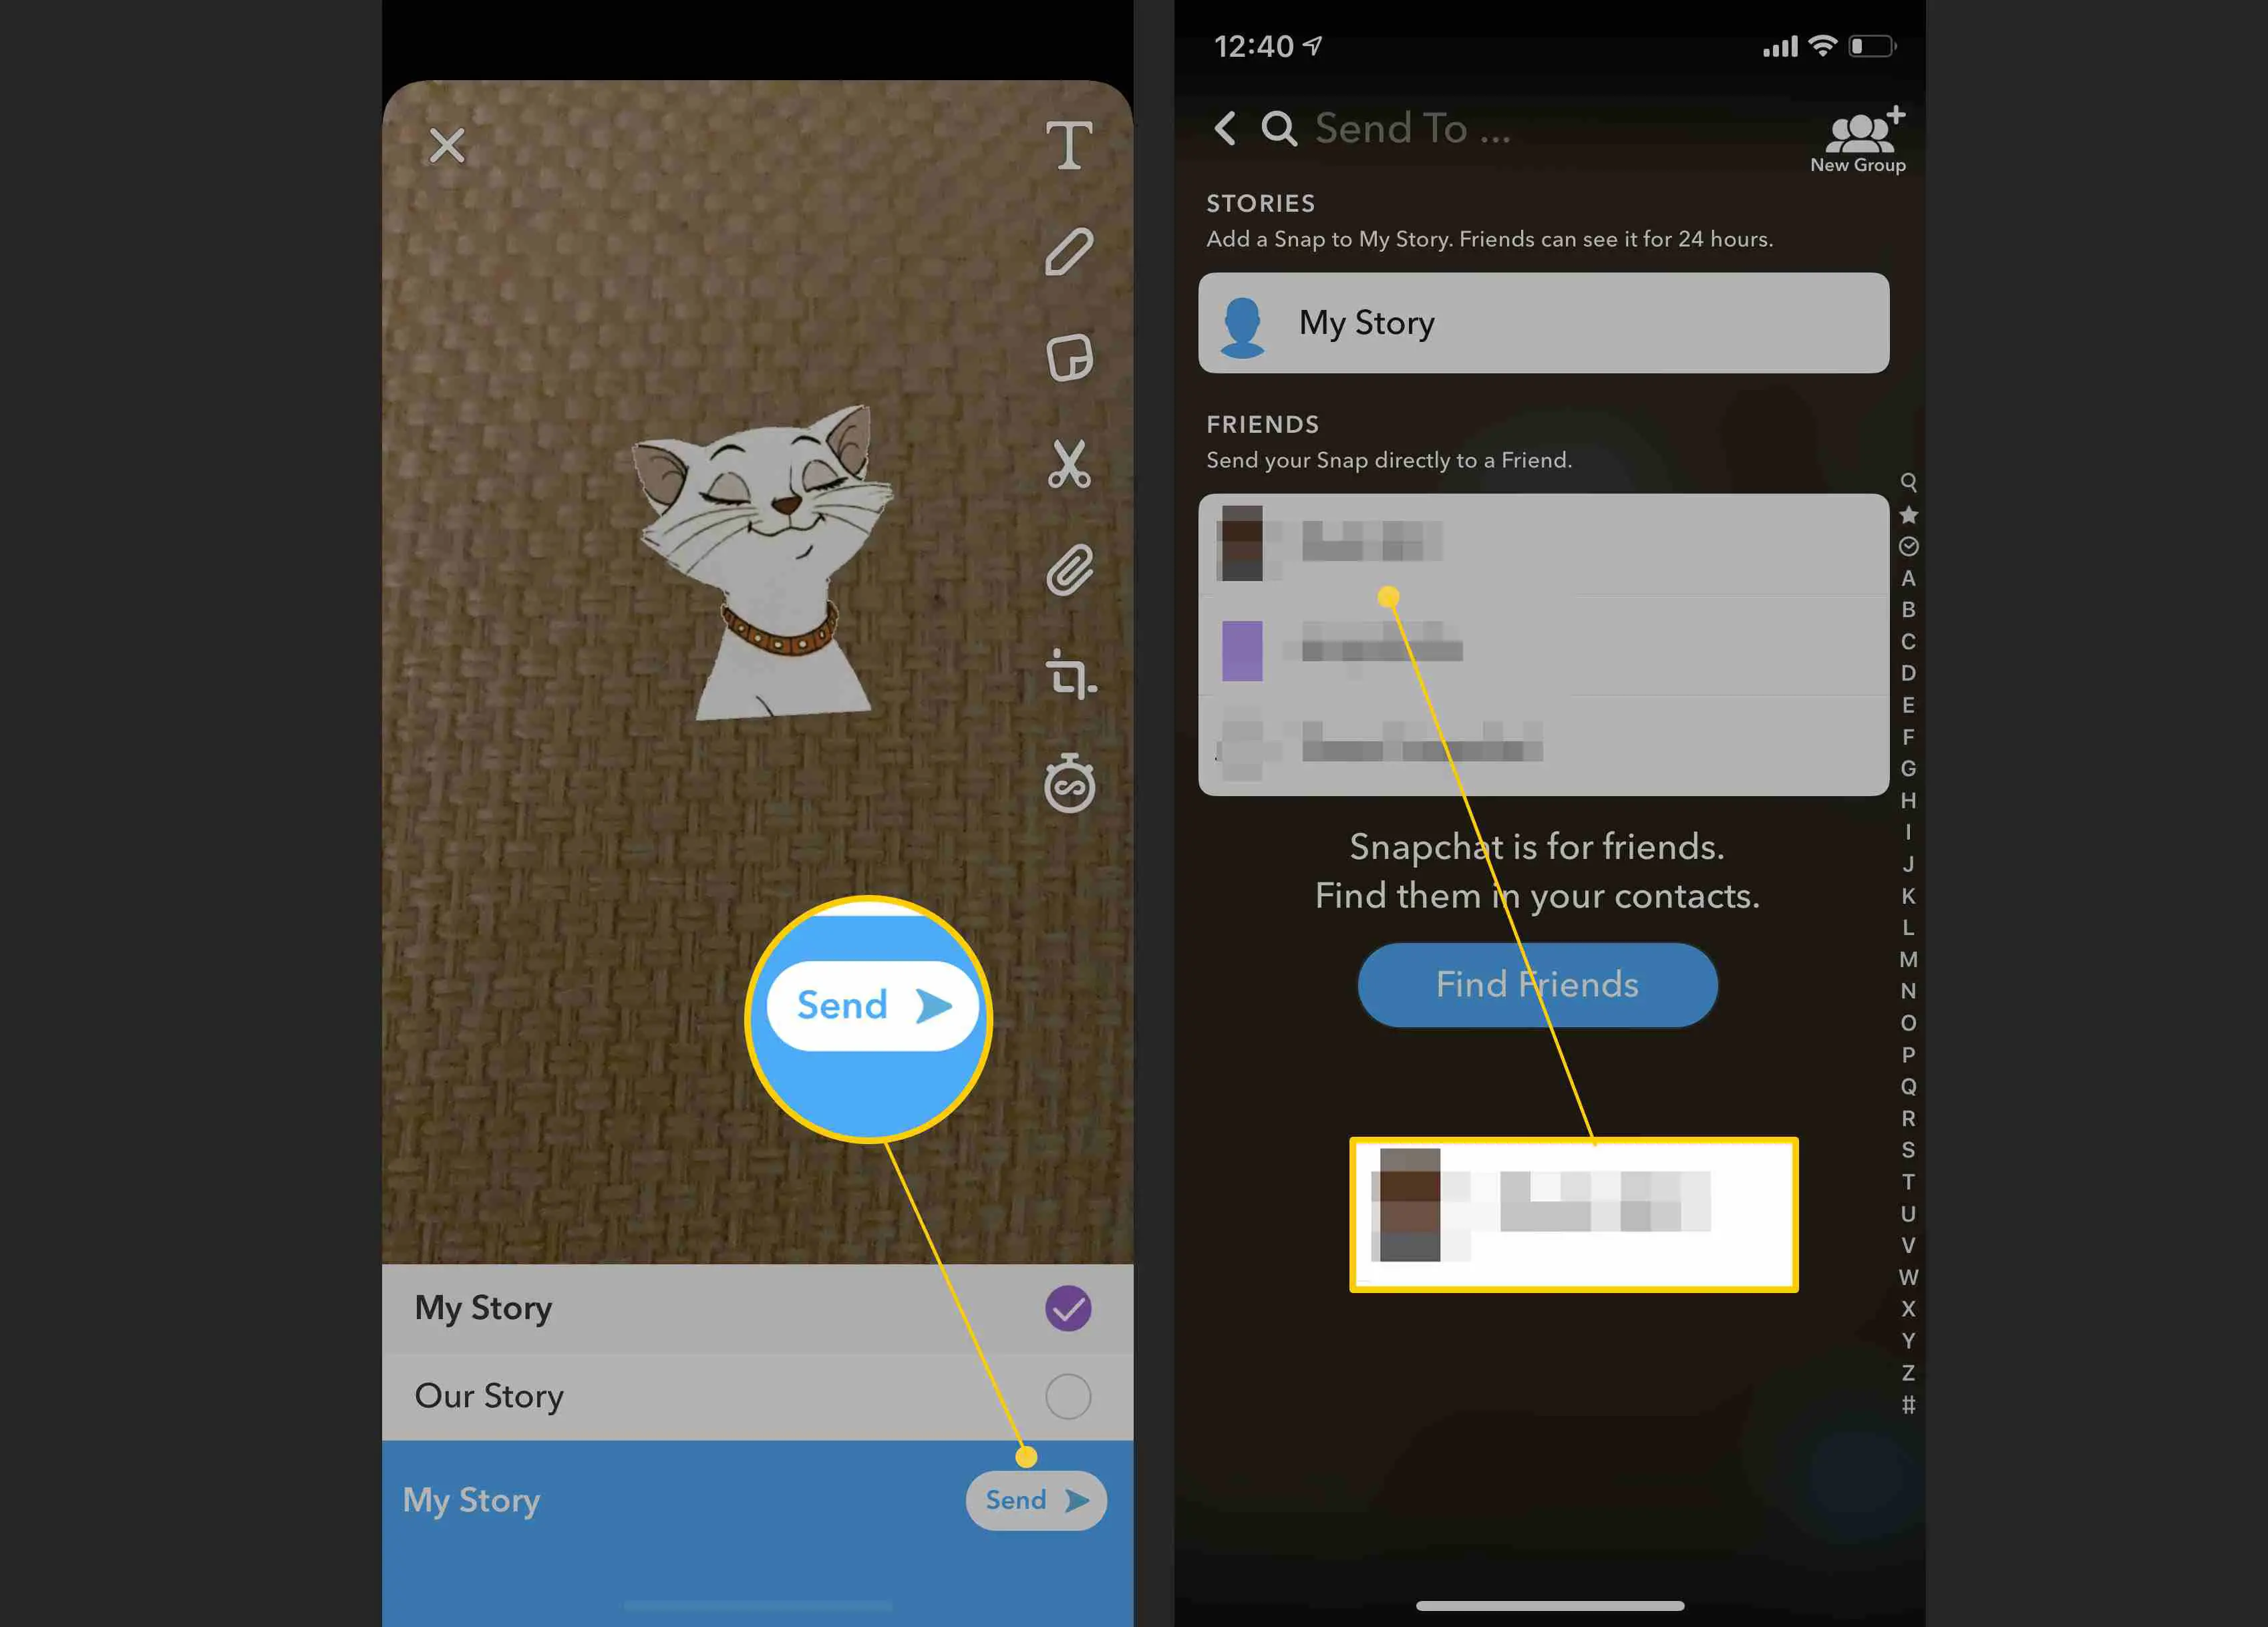 Enviar uma mensagem do Snapchat por meio de uma história ou mensagem privada